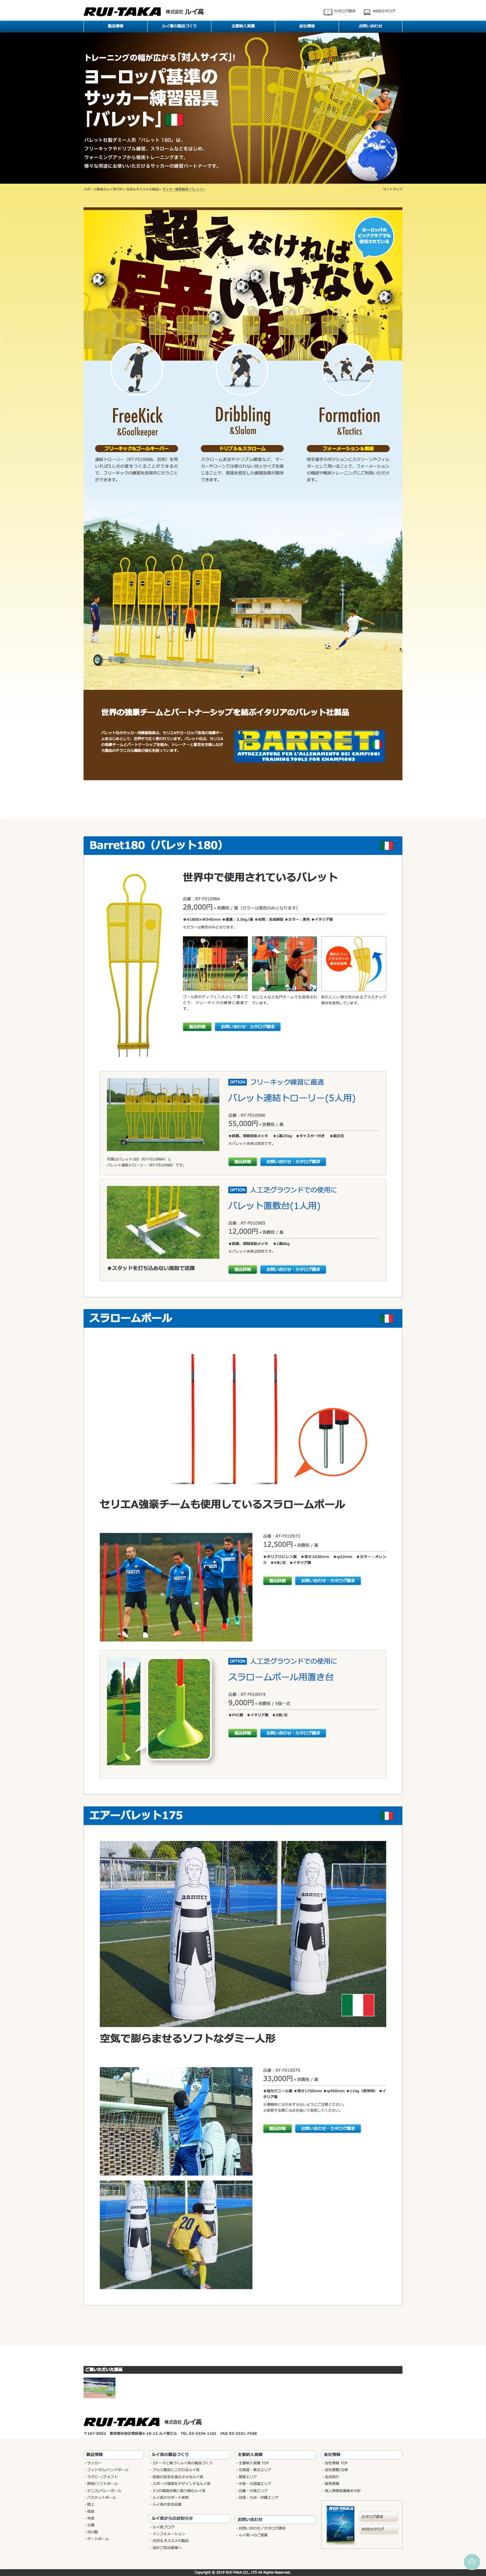 スポーツ施設製造メーカー ホームページ デザイン サンプル 特設ページ/サッカー